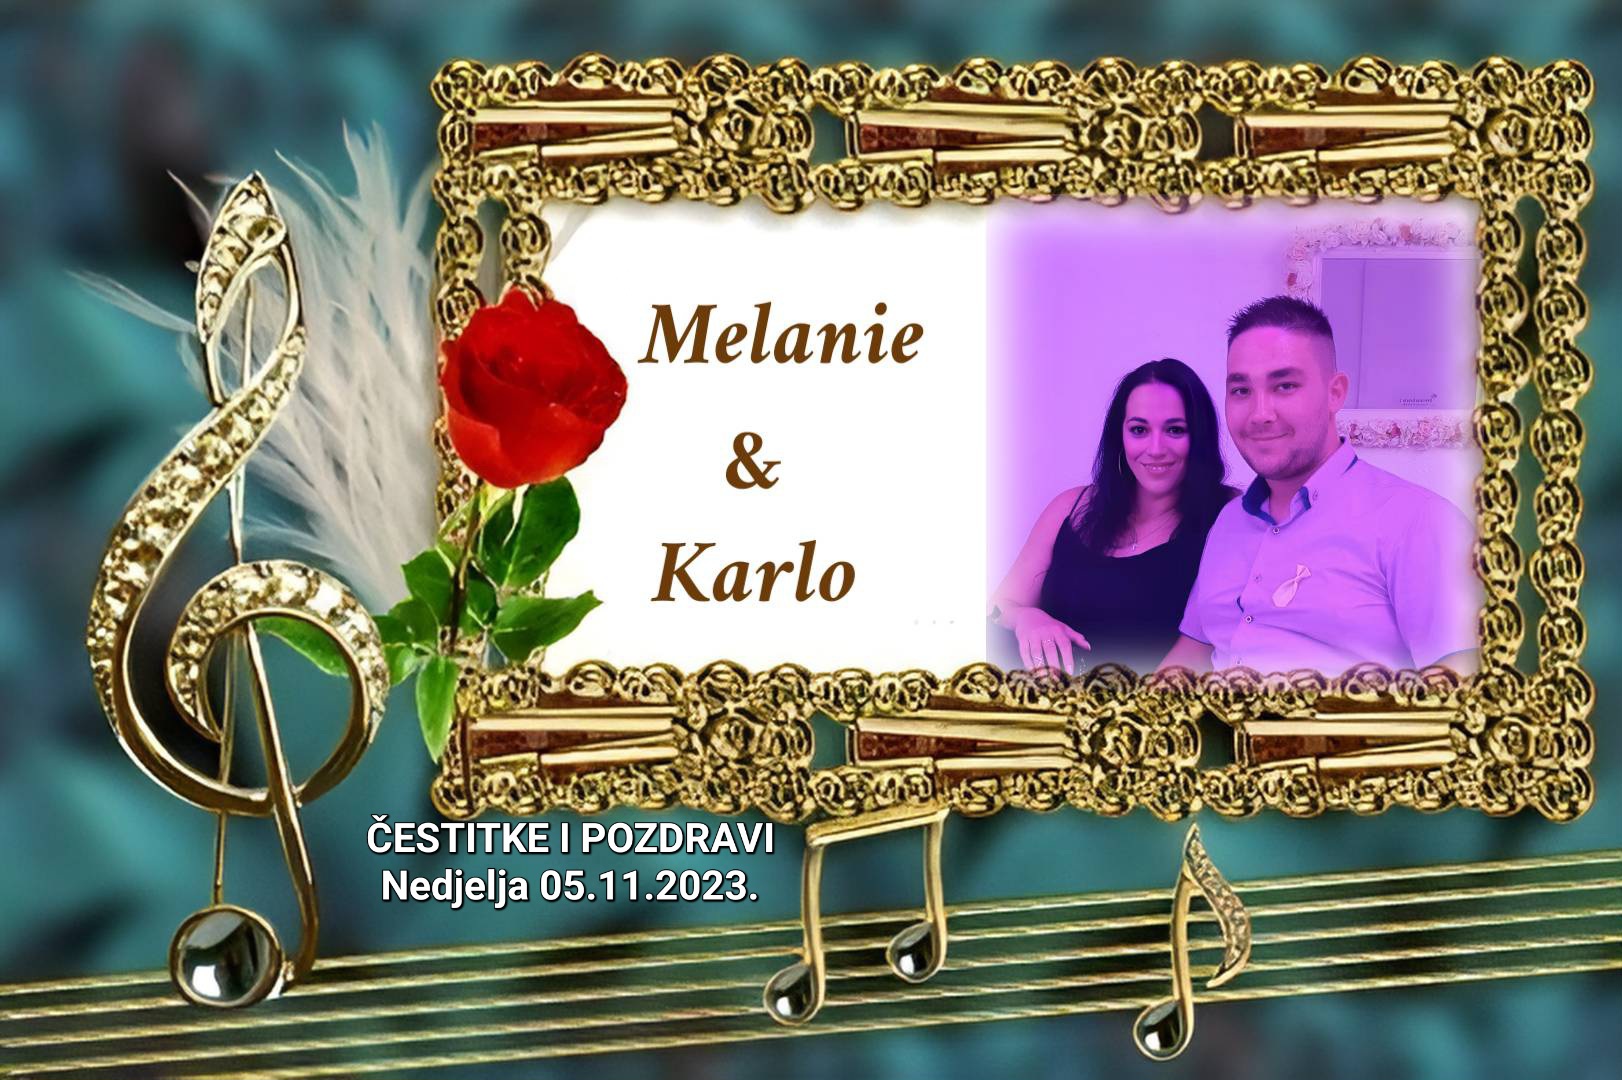 Sutra od 09,30 sati emisija Čestitke i pozdravi posvećena je mladencima Melanie i Karlu